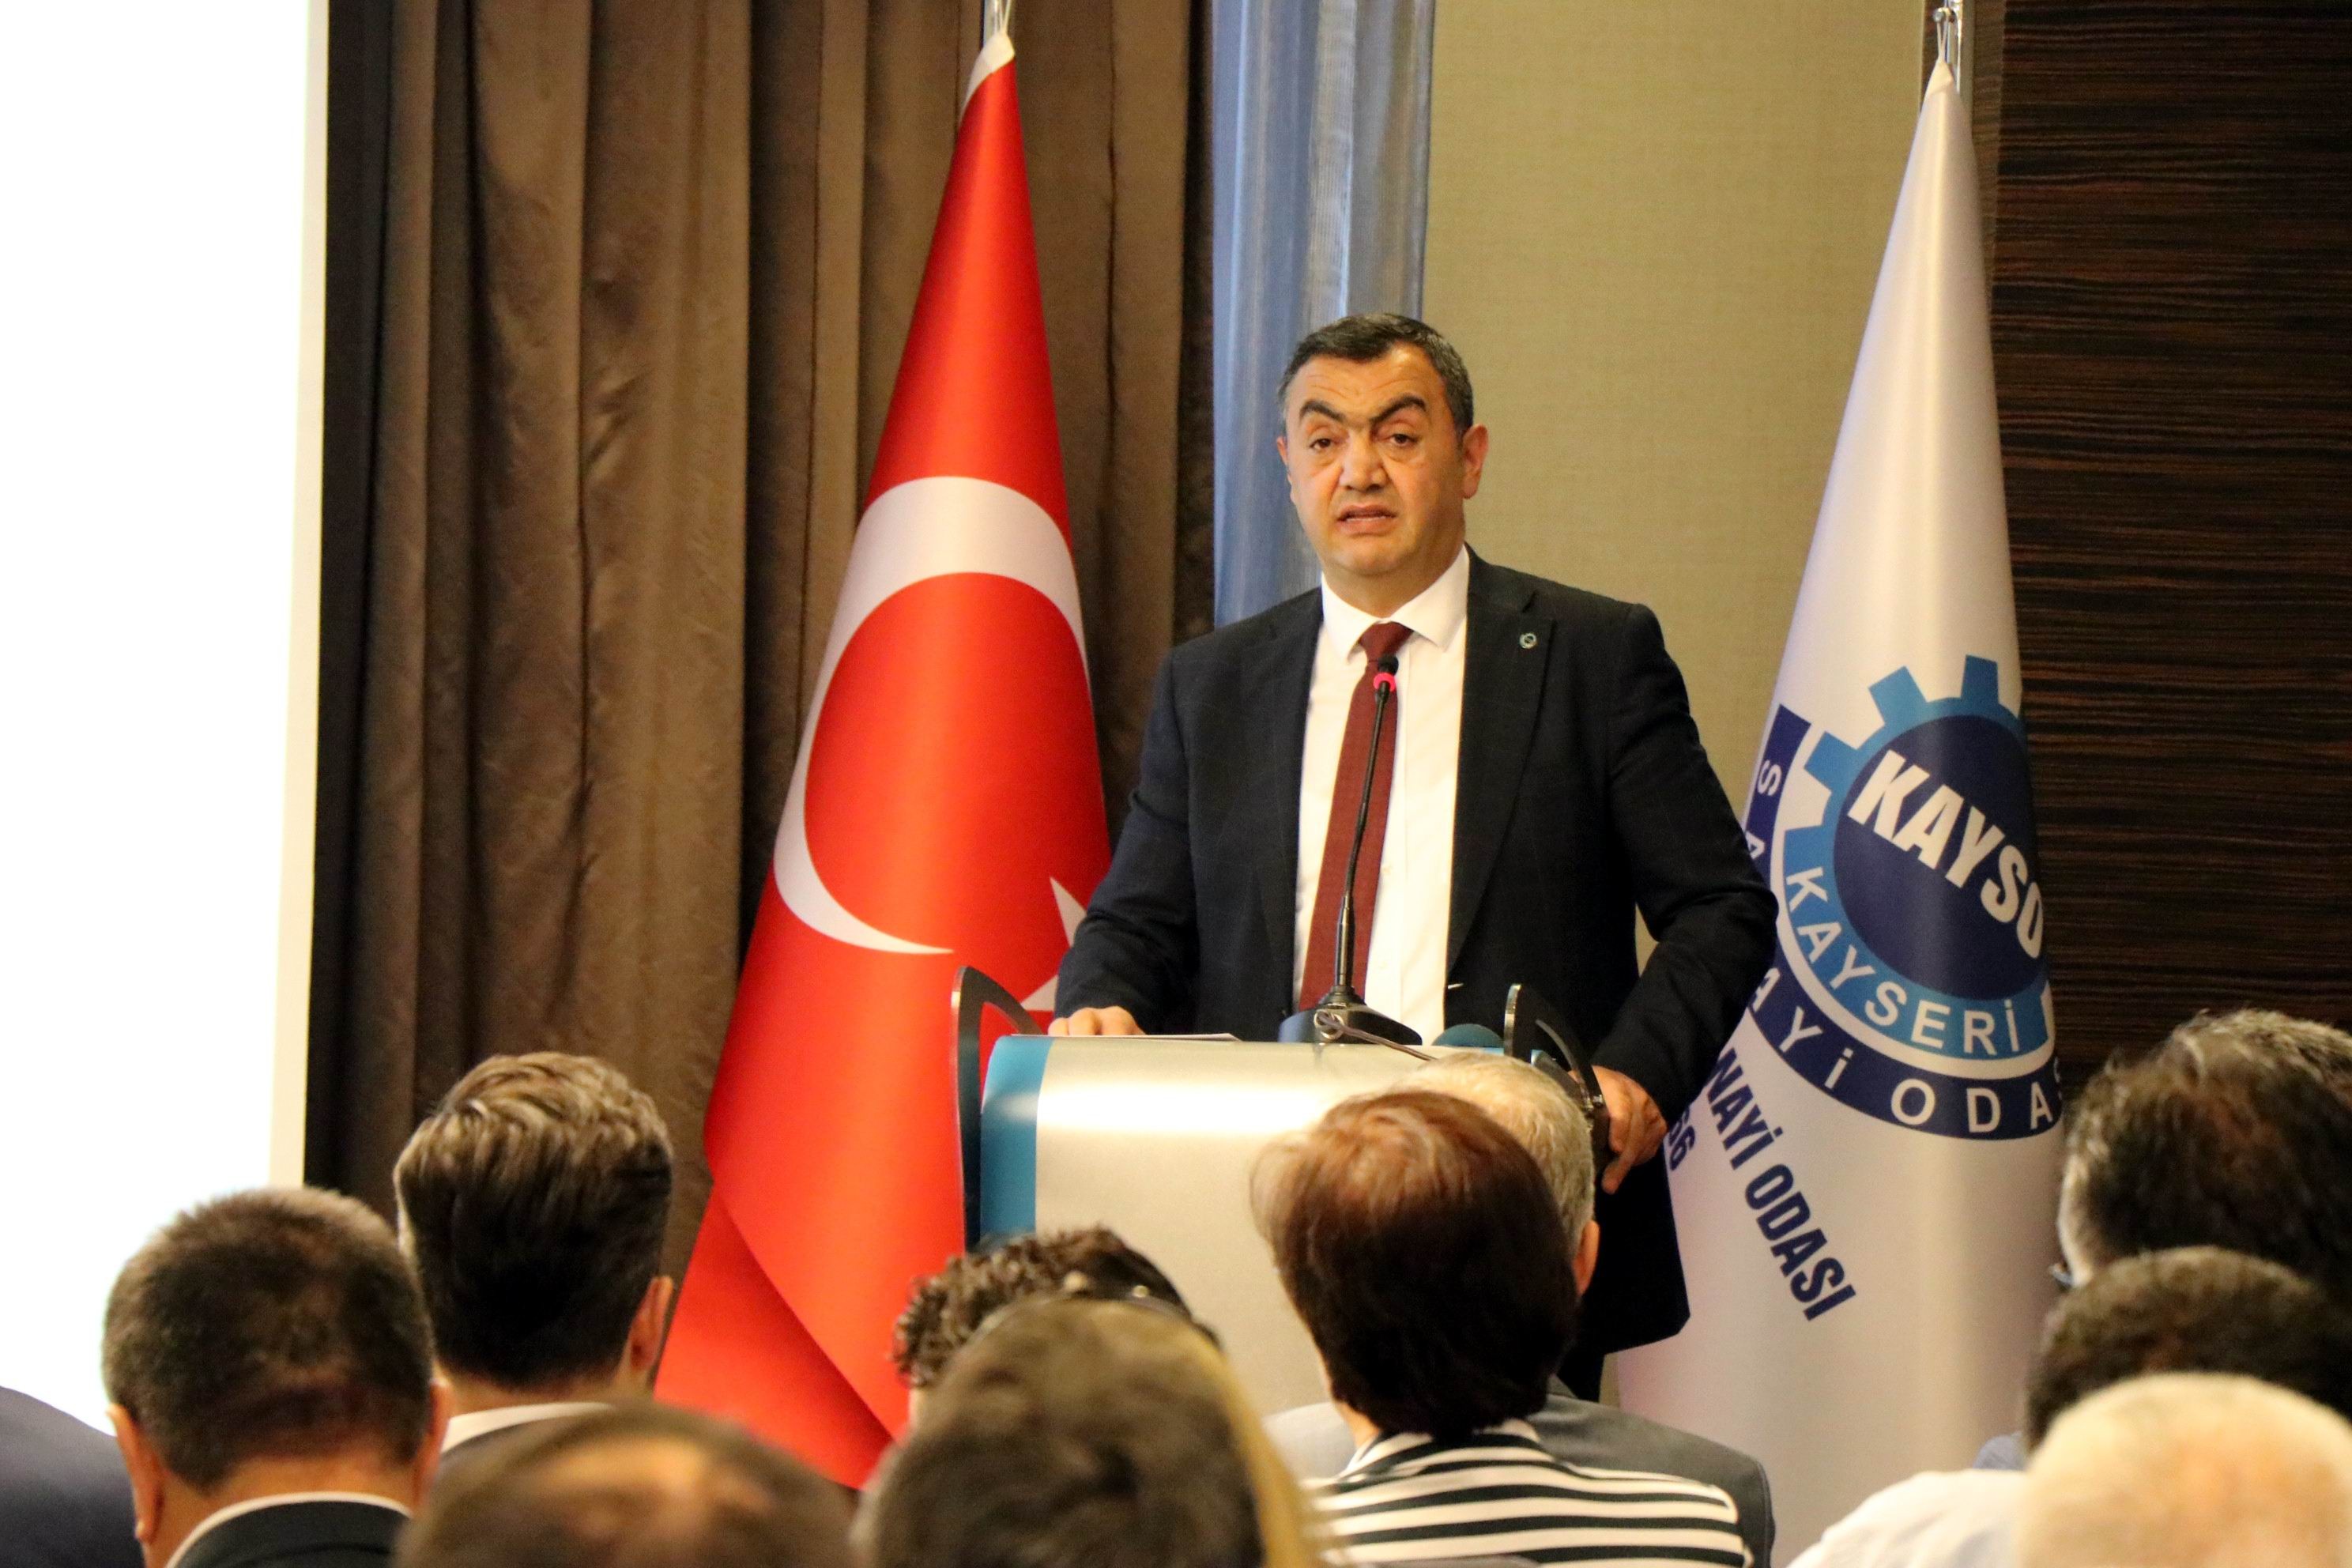 KAYSO Başkanı Büyüksimitçi: “Türkiye üzerinde oyun oynanıyor, uyanık olmamız lazım”